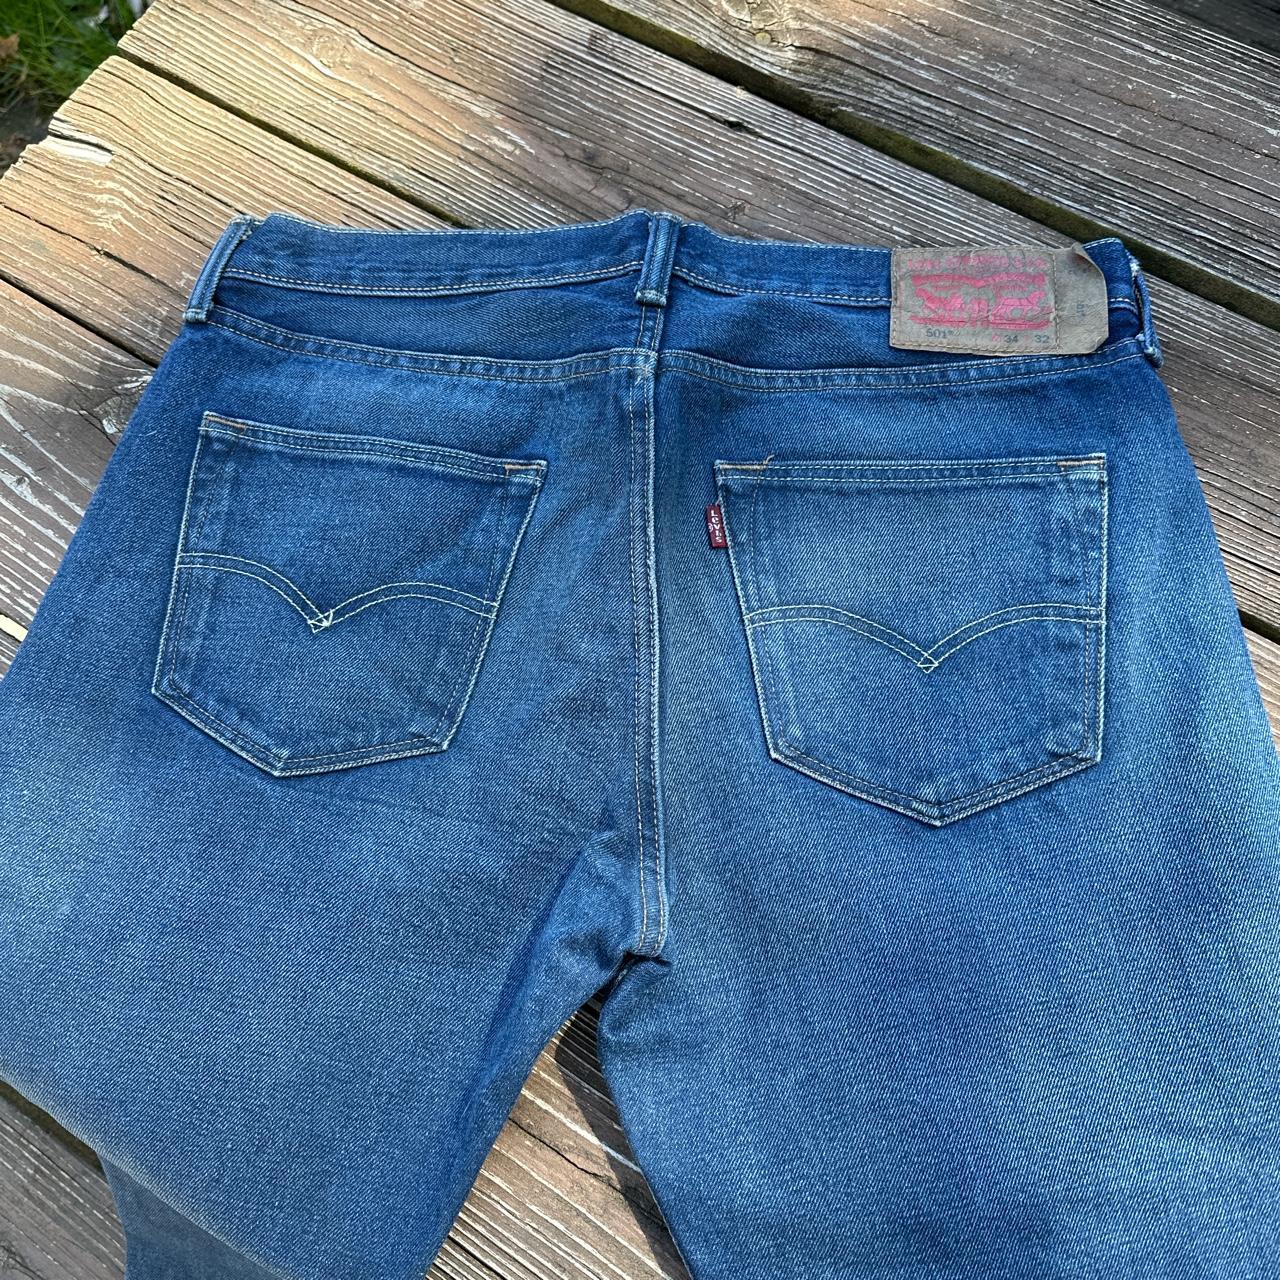 Men's Levi's 501 blue jeans Size 34/32. If... - Depop